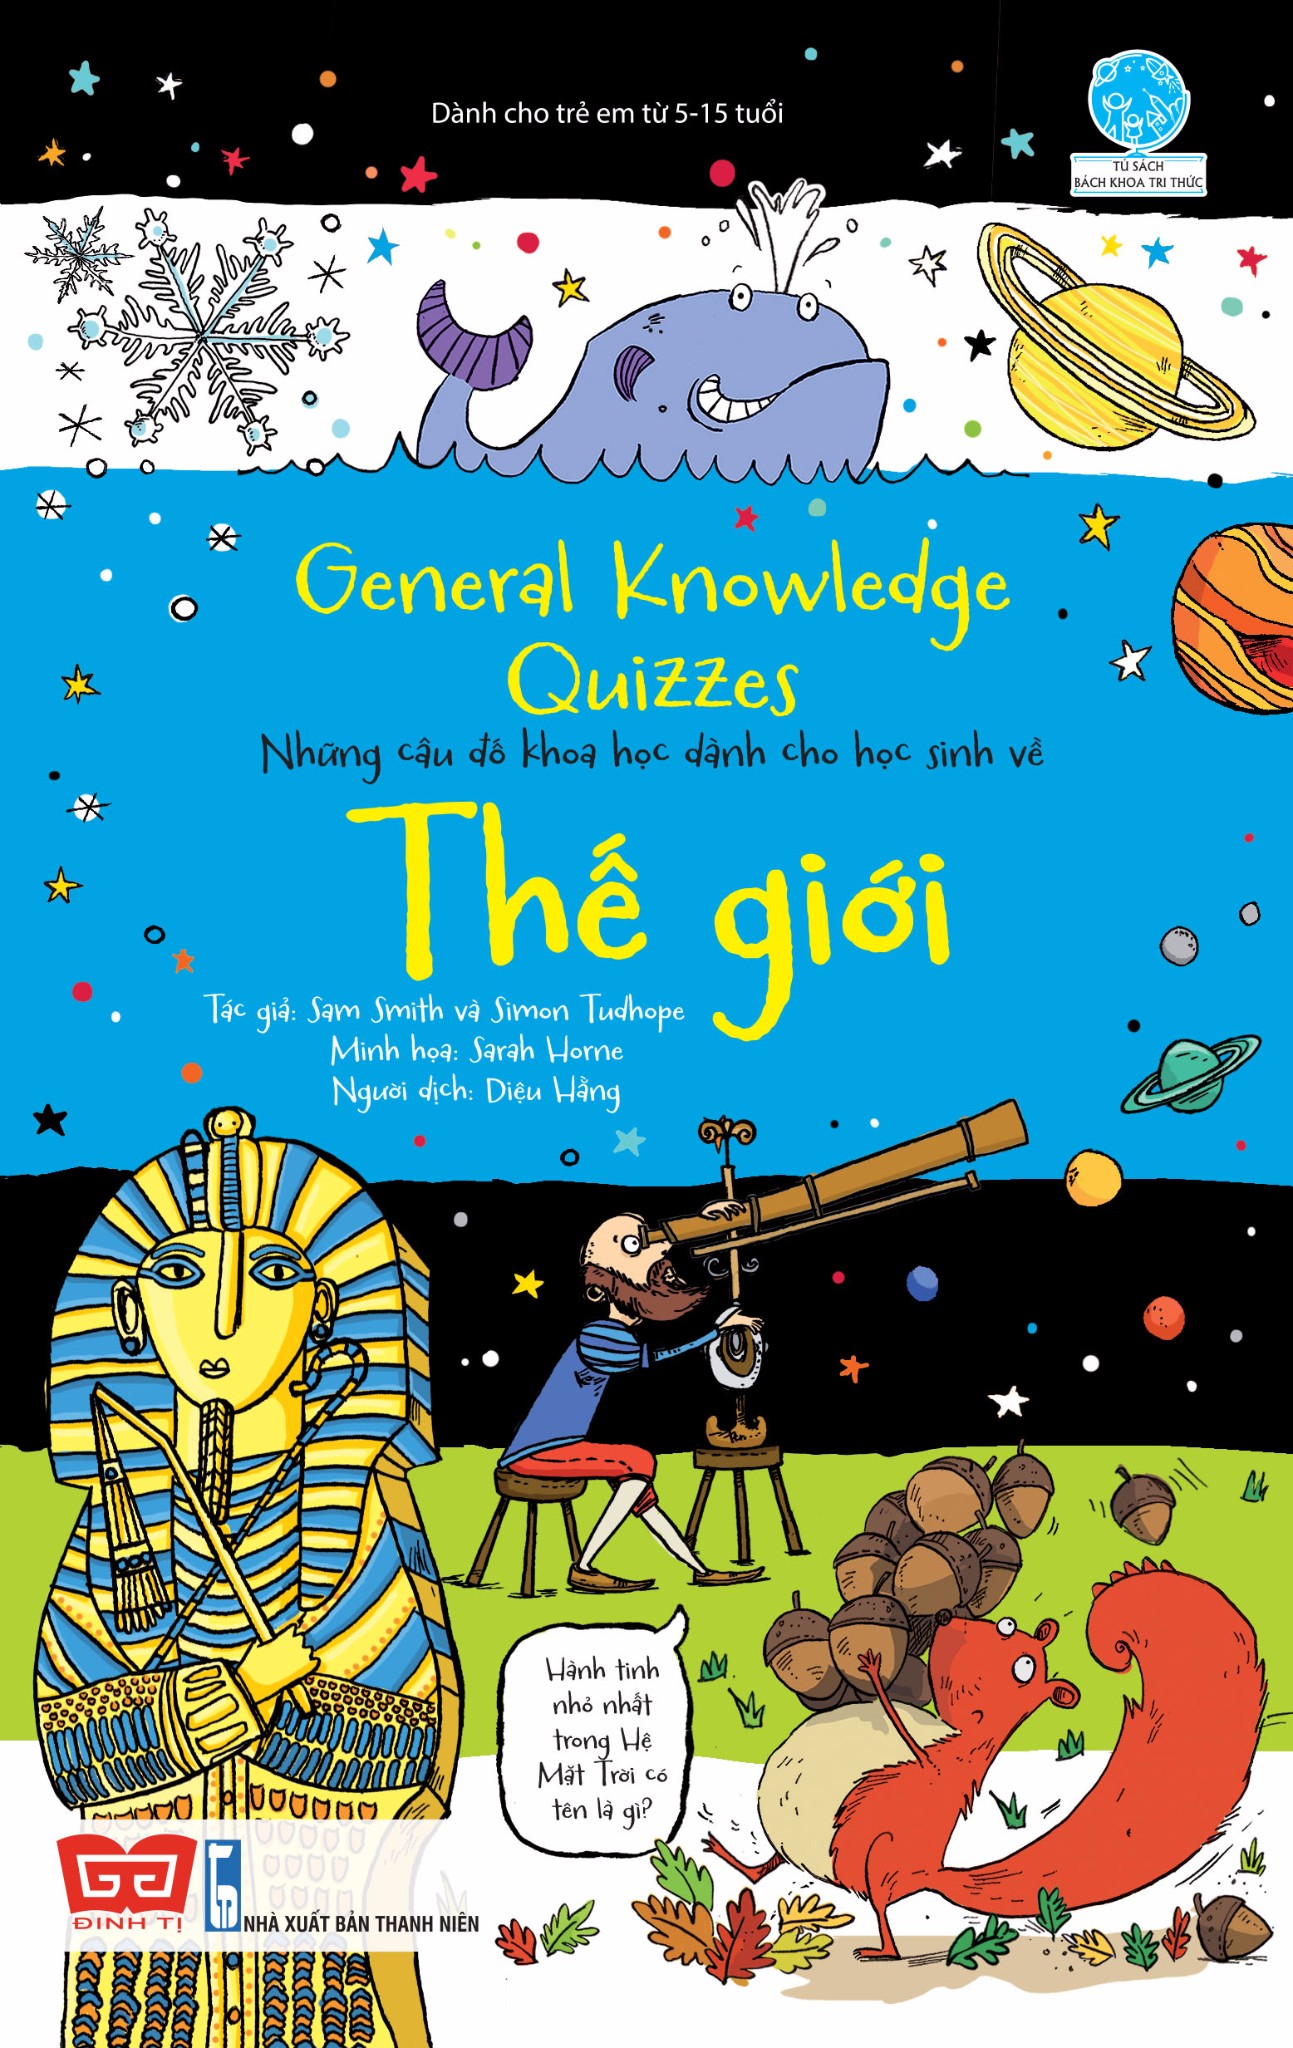 General Knowledge Quizzes - Những Câu Đố Khoa Học Dành Cho Học Sinh Về Thế Giới